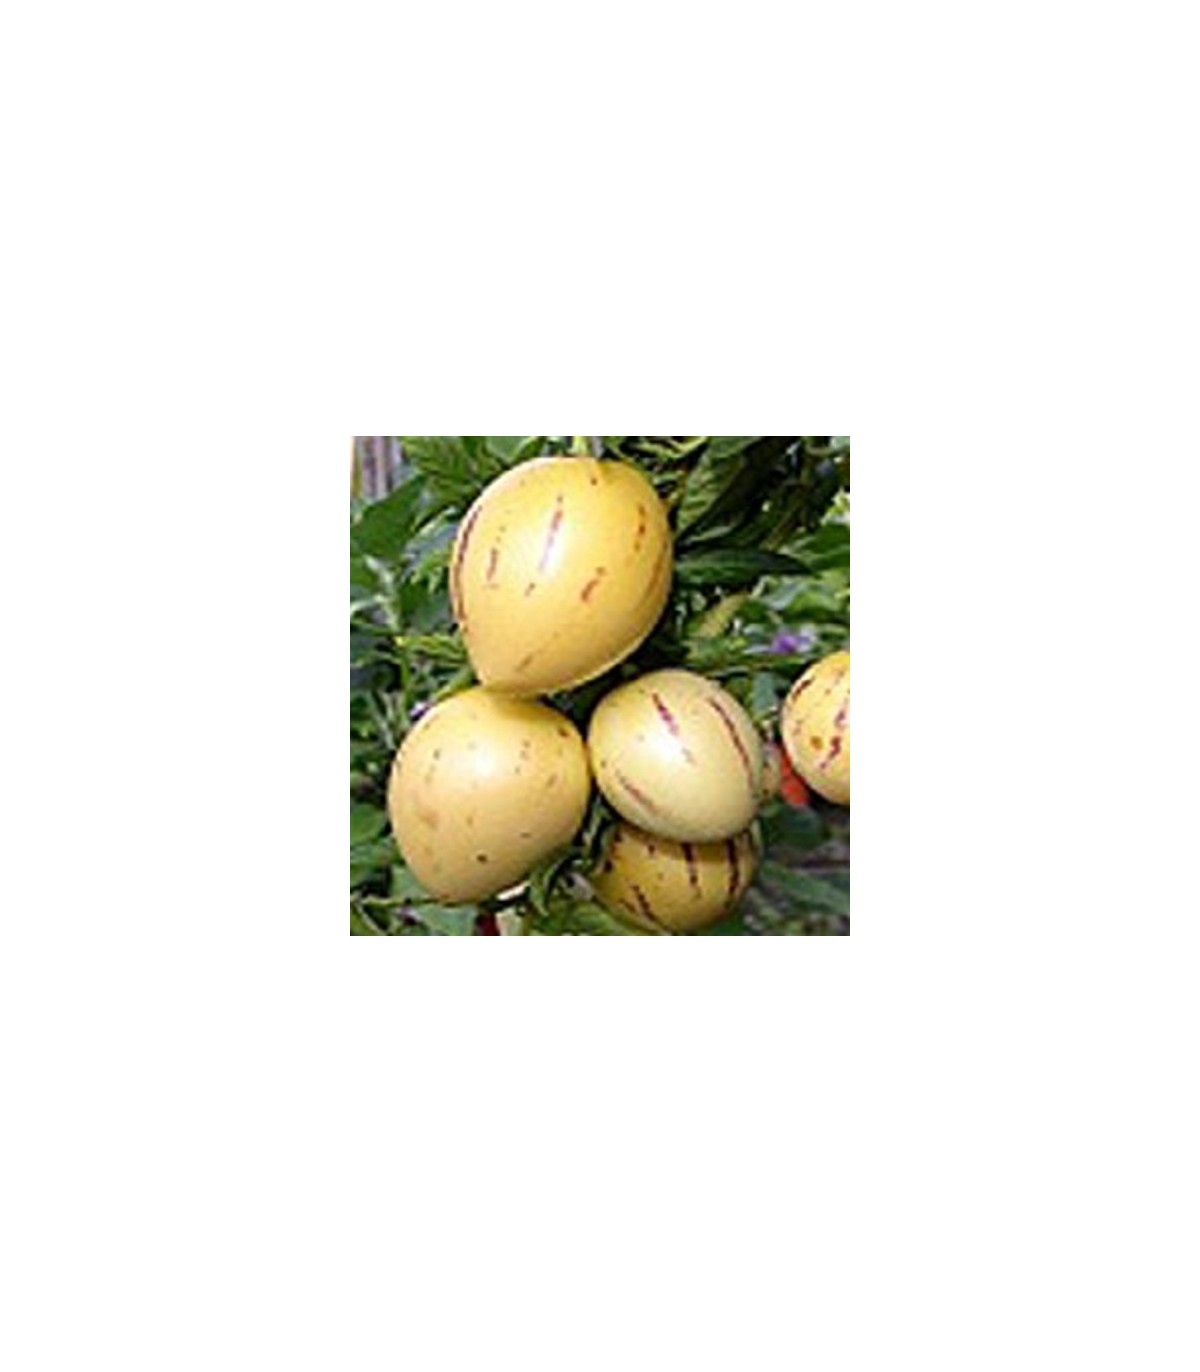 5 graines POIRE-MELON PEPINO DULCE G57 MELON PEAR SEED SEMILLA Solanum Muricatum 